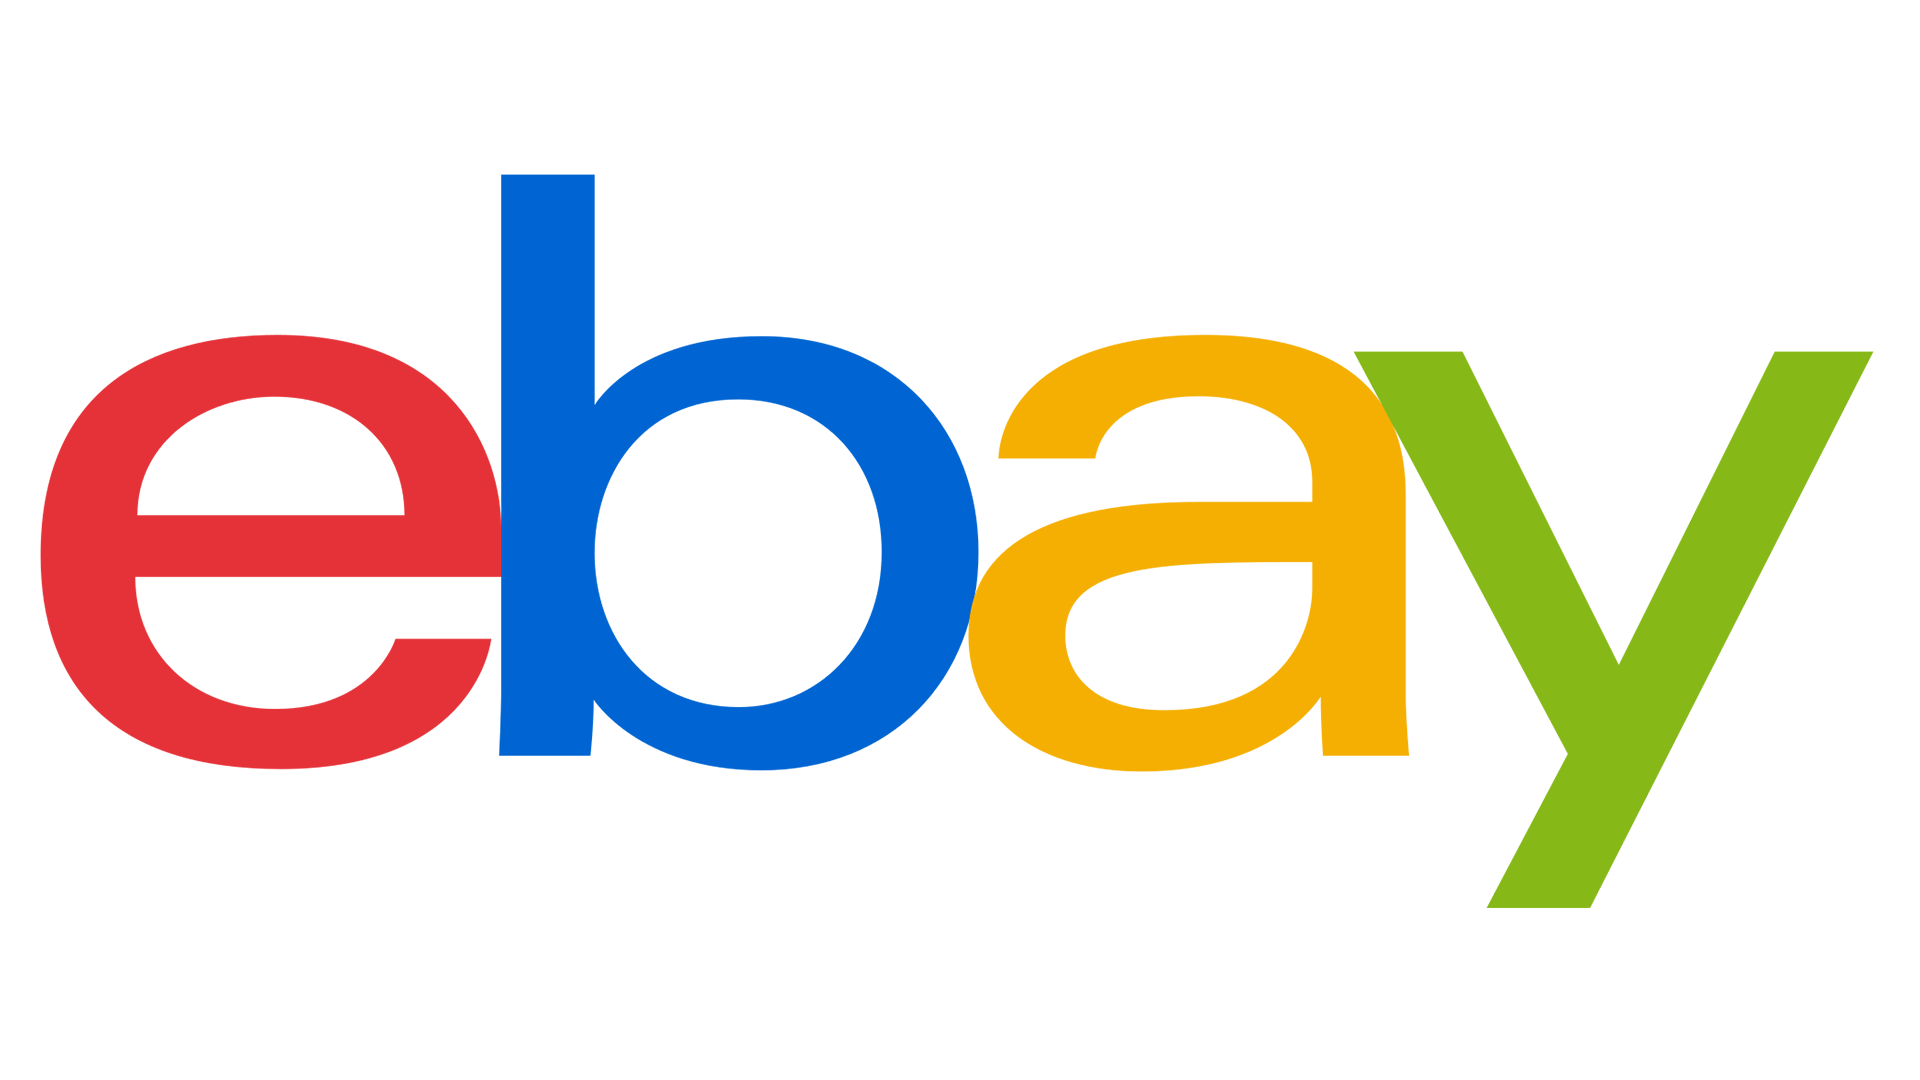 Mua hộ hàng Ebay Mỹ về Cần Thơ thật dễ dàng tại Cần Thơ Logistics!